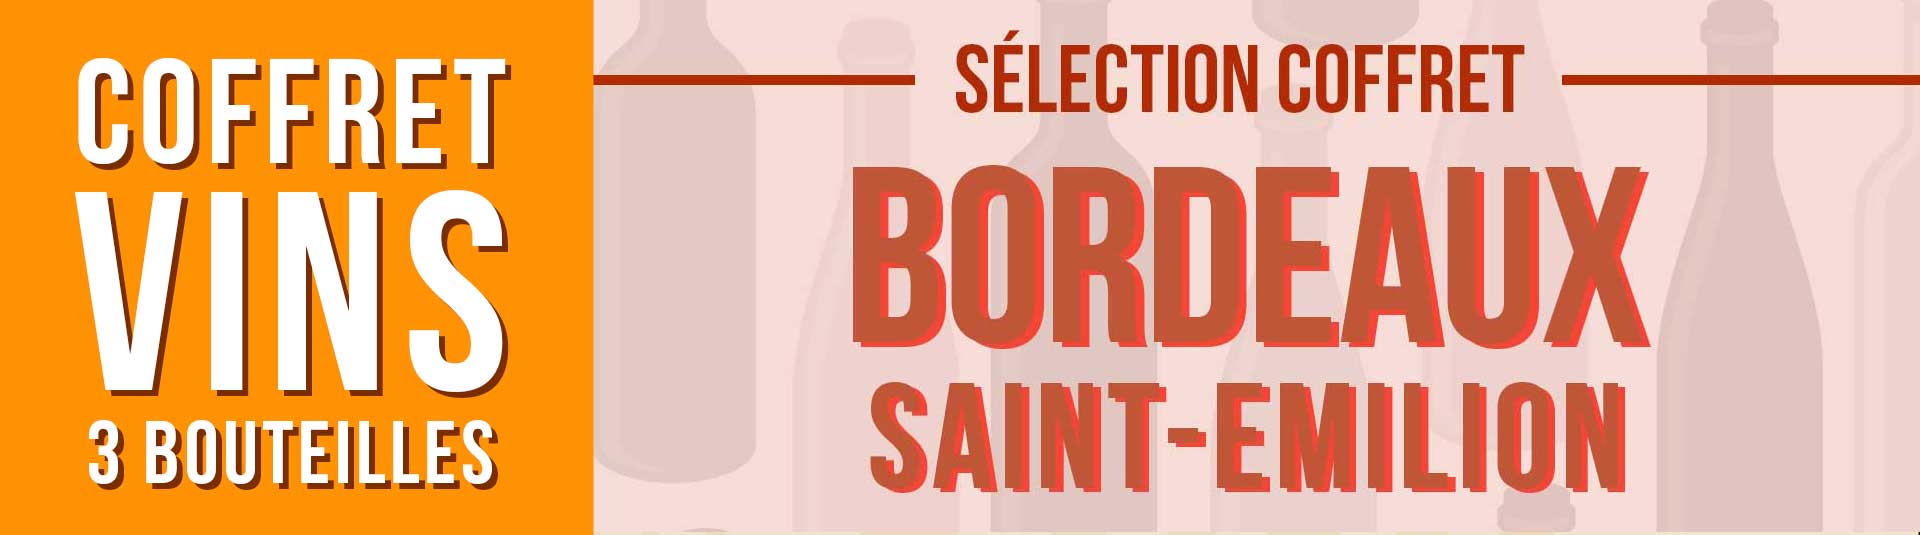 Coffret vin rouge Bordeaux Saint-Emilion Sélection 3 bouteilles